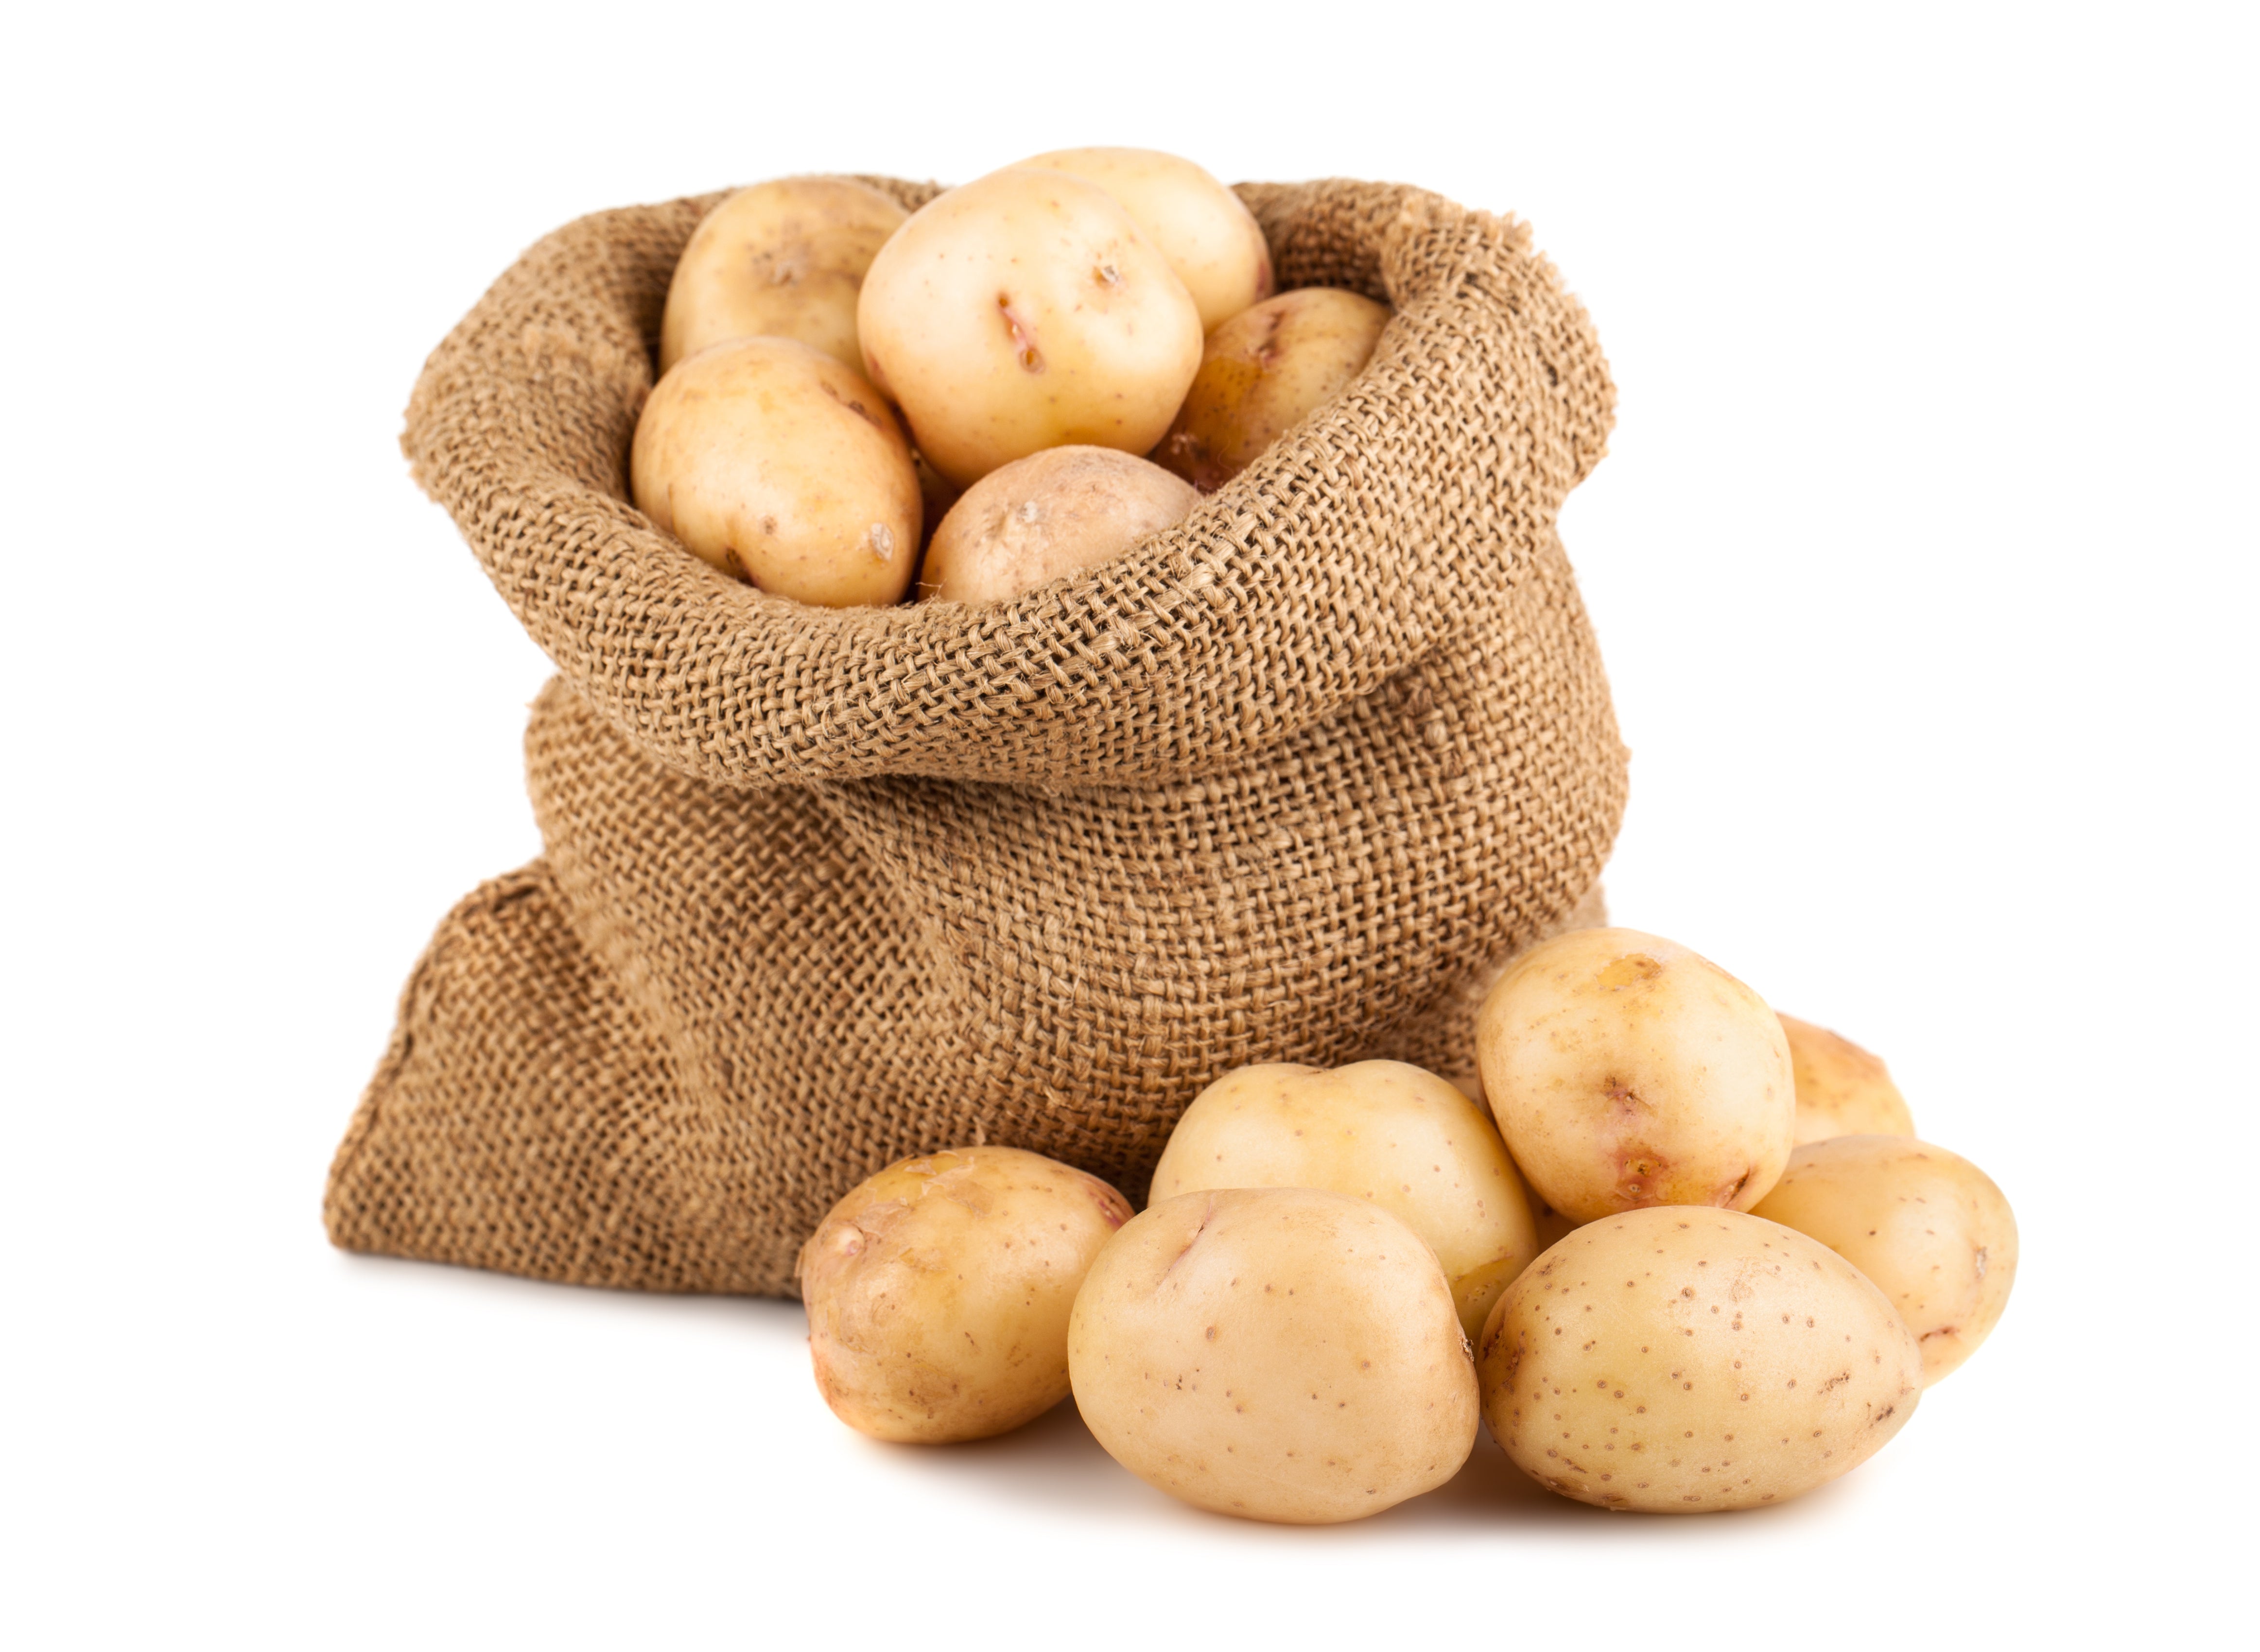 Yukon Potatoes 5lb. Bag – Green Lane